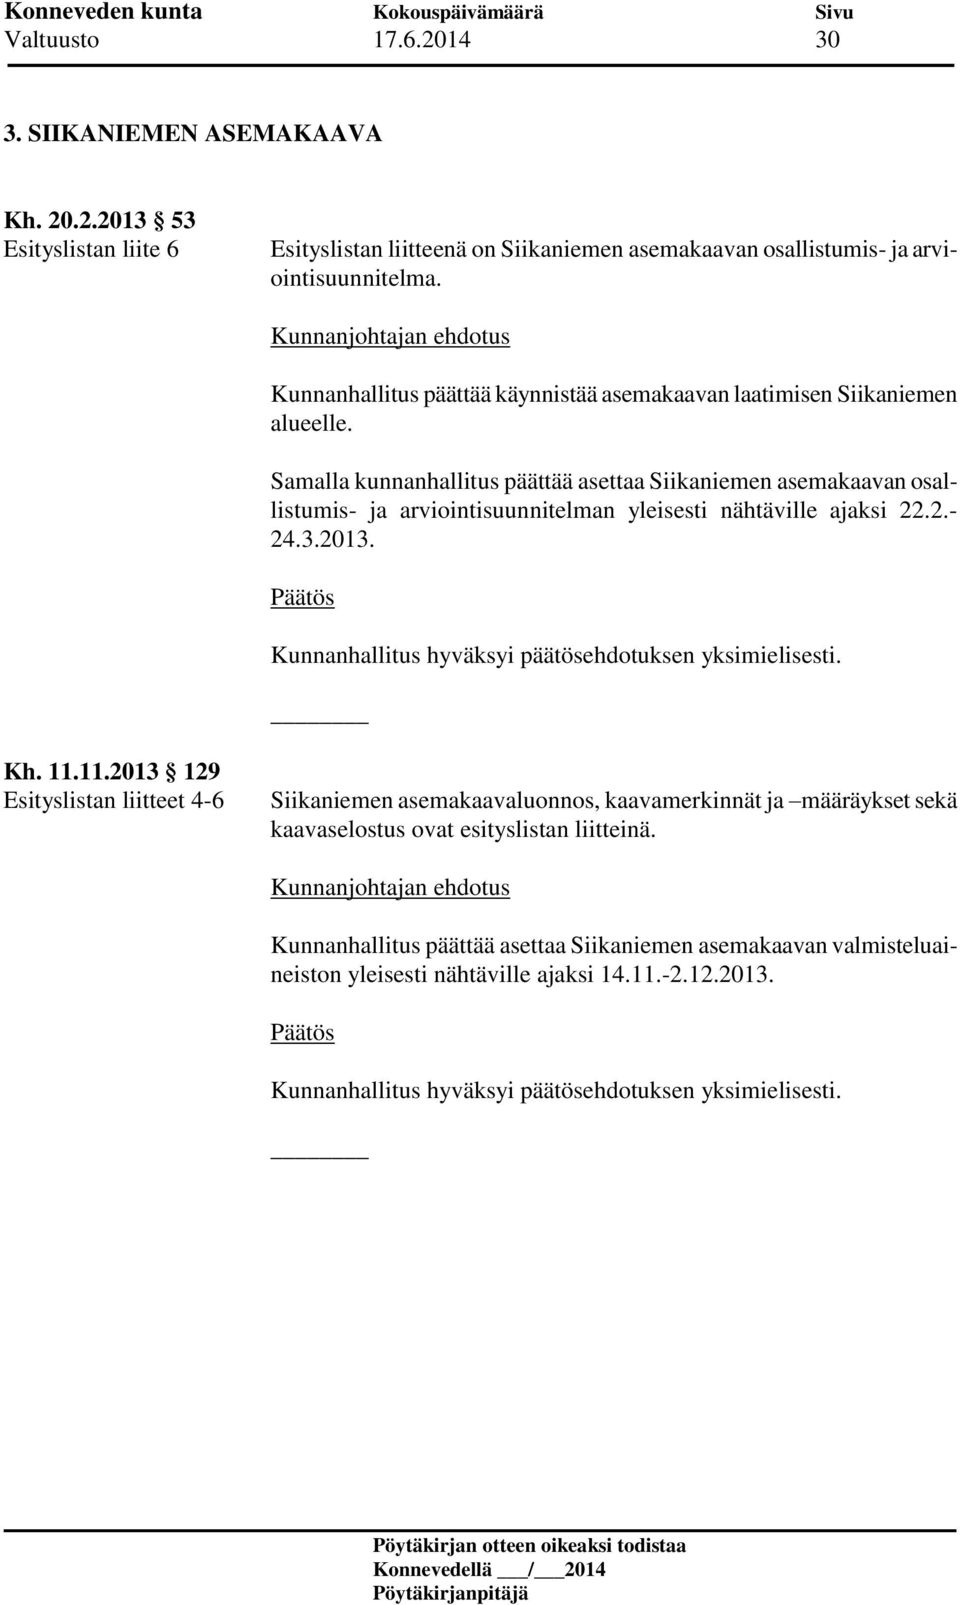 Samalla kunnanhallitus päättää asettaa Siikaniemen asemakaavan osallistumis- ja arviointisuunnitelman yleisesti nähtäville ajaksi 22.2.- 24.3.2013. Kh. 11.